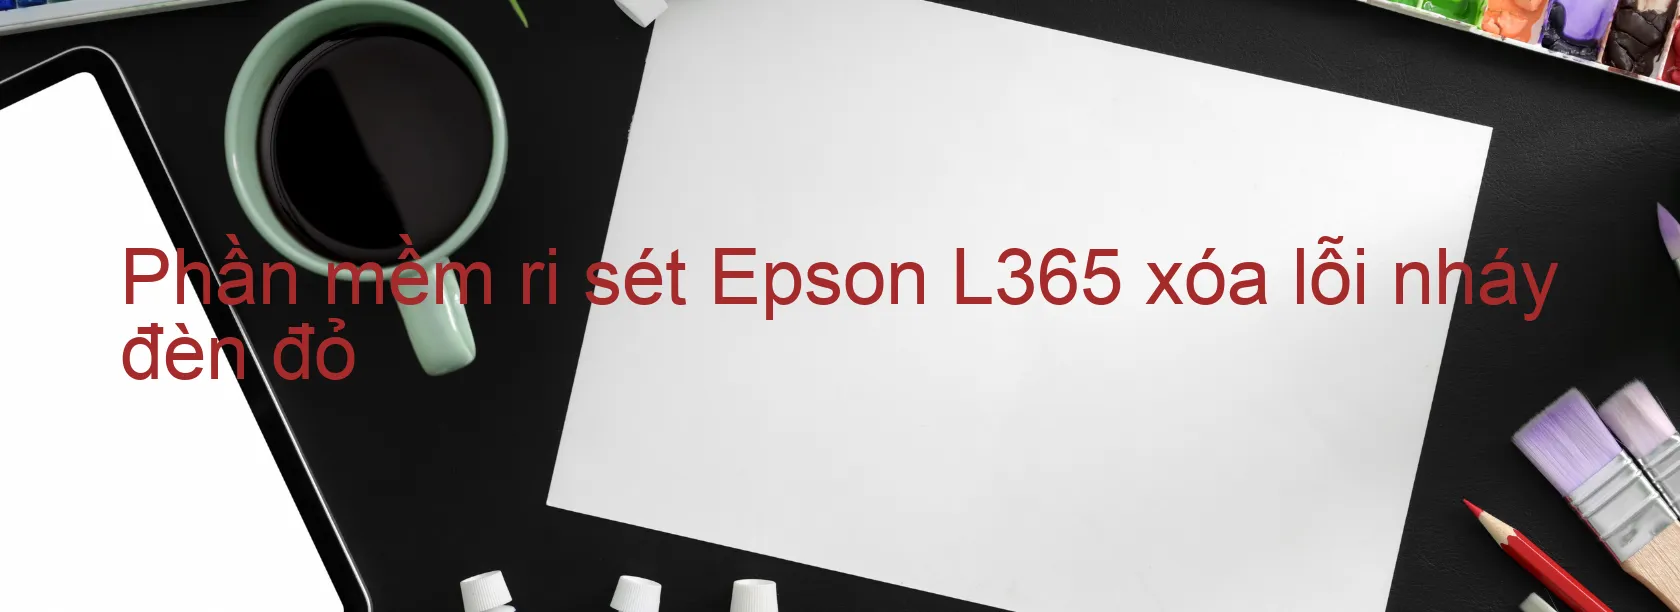 Phần mềm reset Epson L365 xóa lỗi nháy đèn đỏ